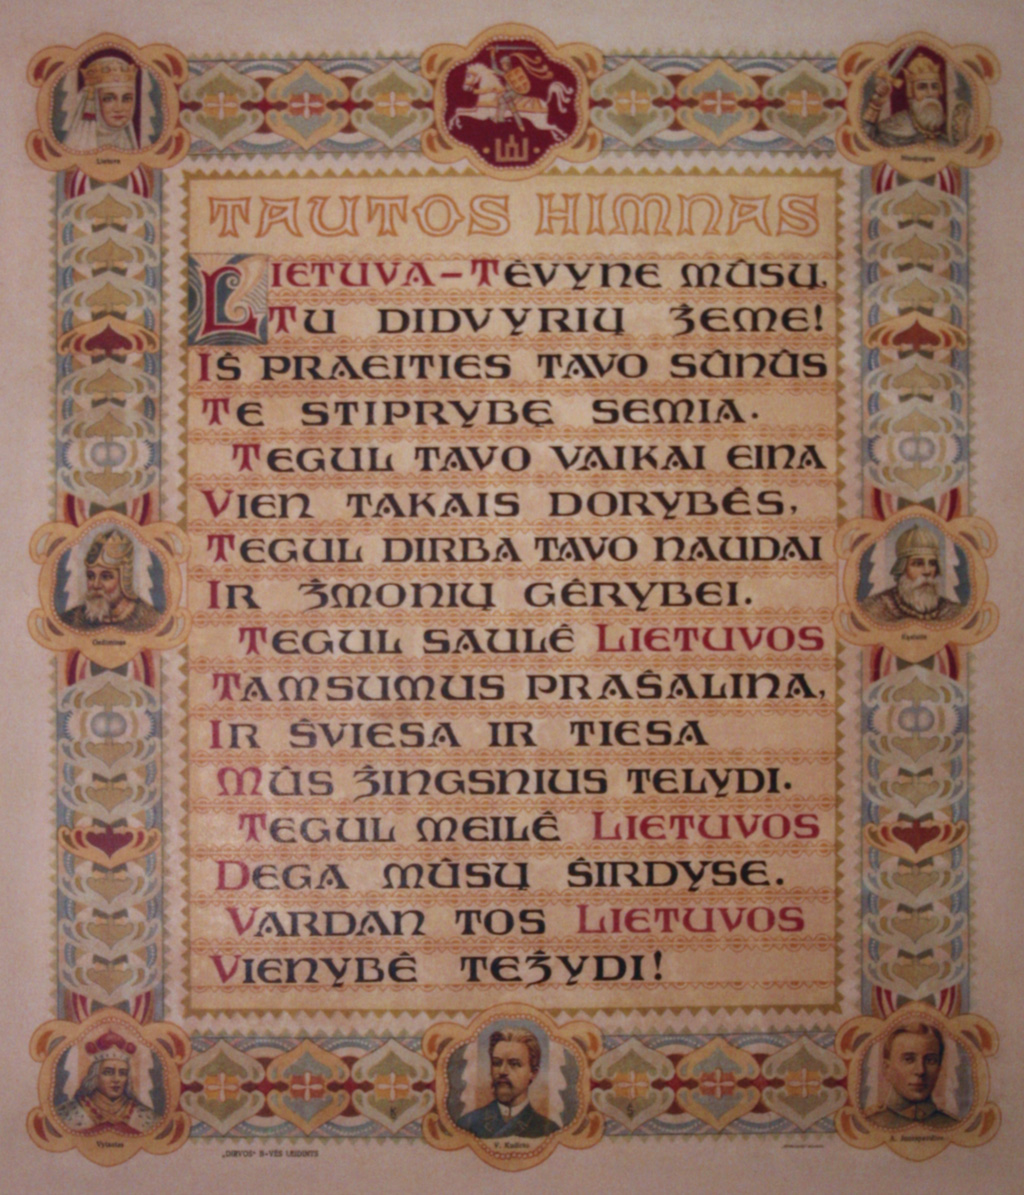 Lietuvos himnas. Vincas Kudirka, Tautiška giesmė, 1938 metai